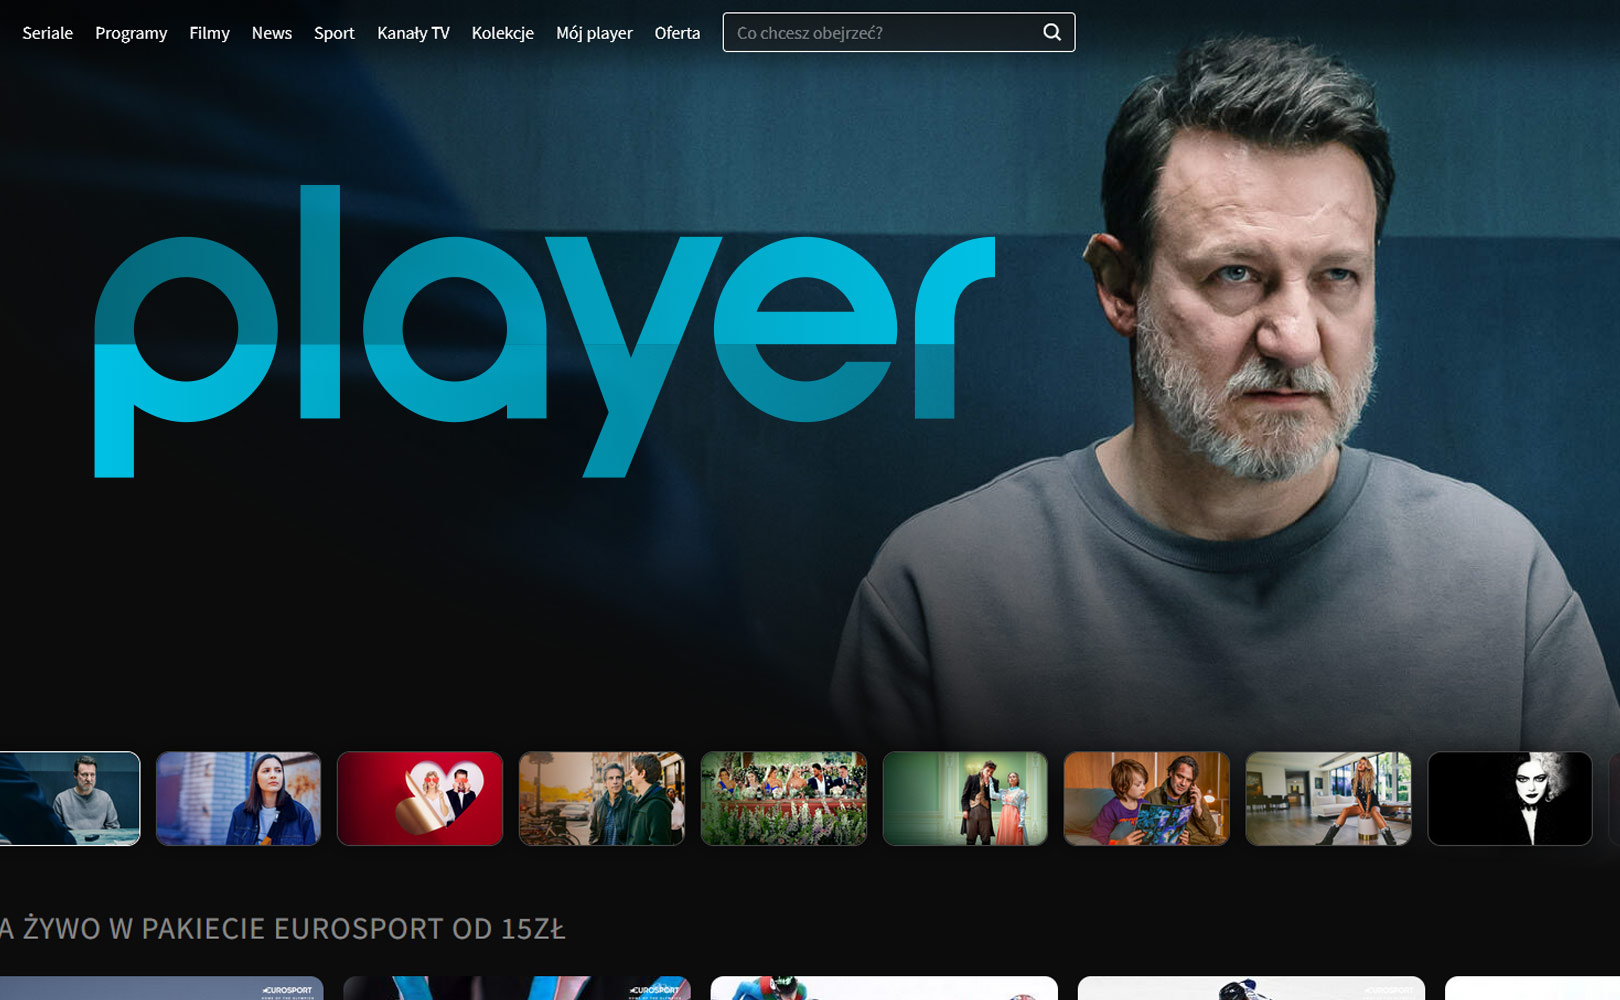 Co oglądać na Player.pl? Najlepsze filmy i seriale